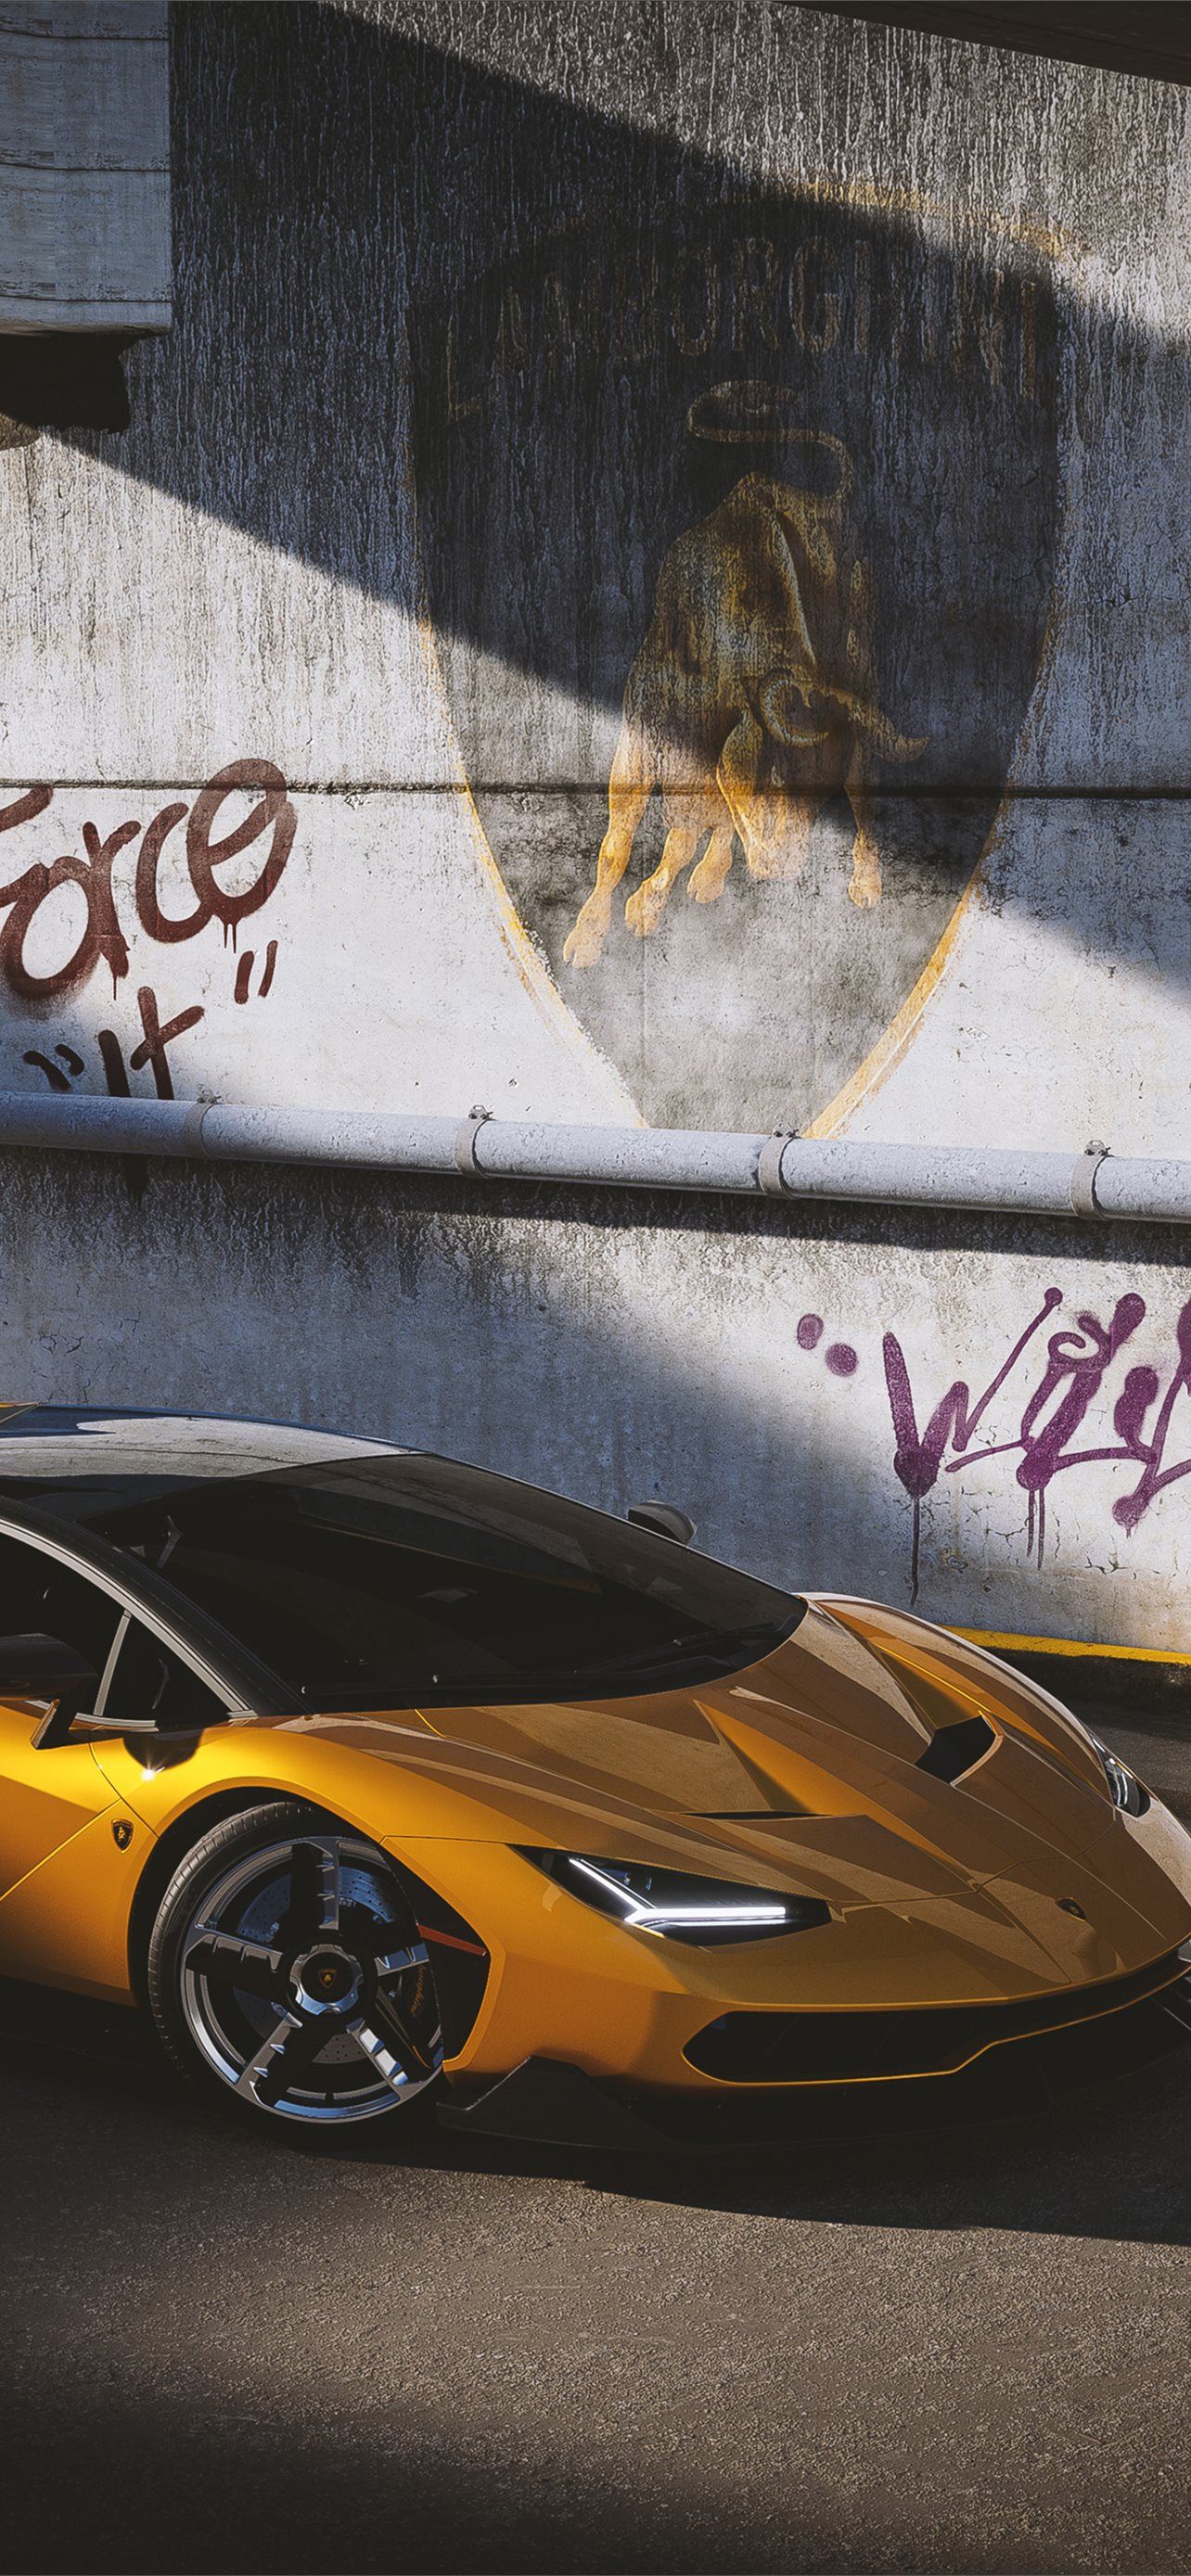 Lamborghini Centenario Yellow Cgi 2021 4k Samsung. iPhone Wallpaper Free Download